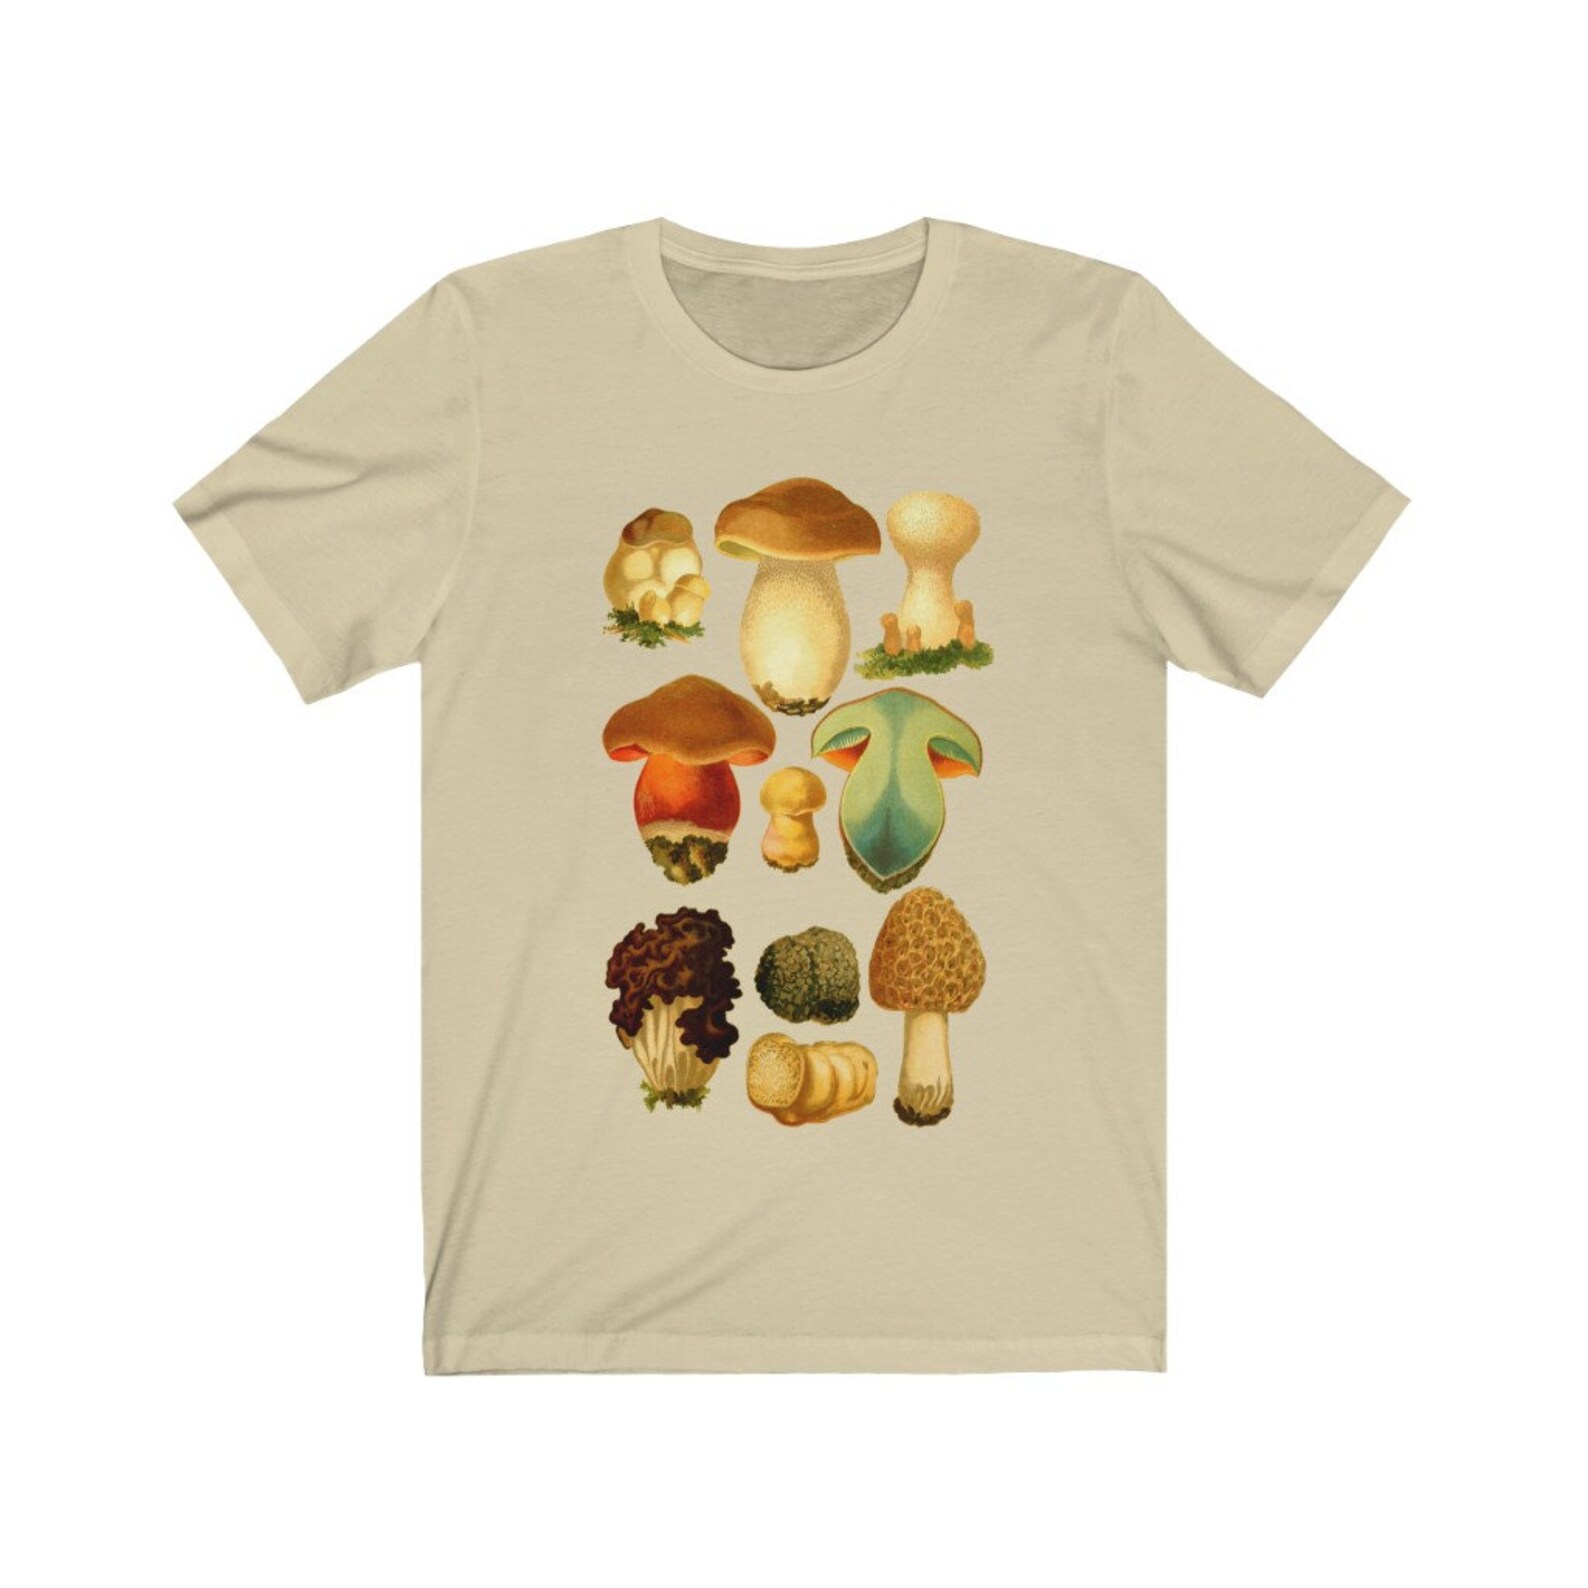 Mushroom shirt mushroom t-shirt botanical t-shirt t-shirts | Etsy